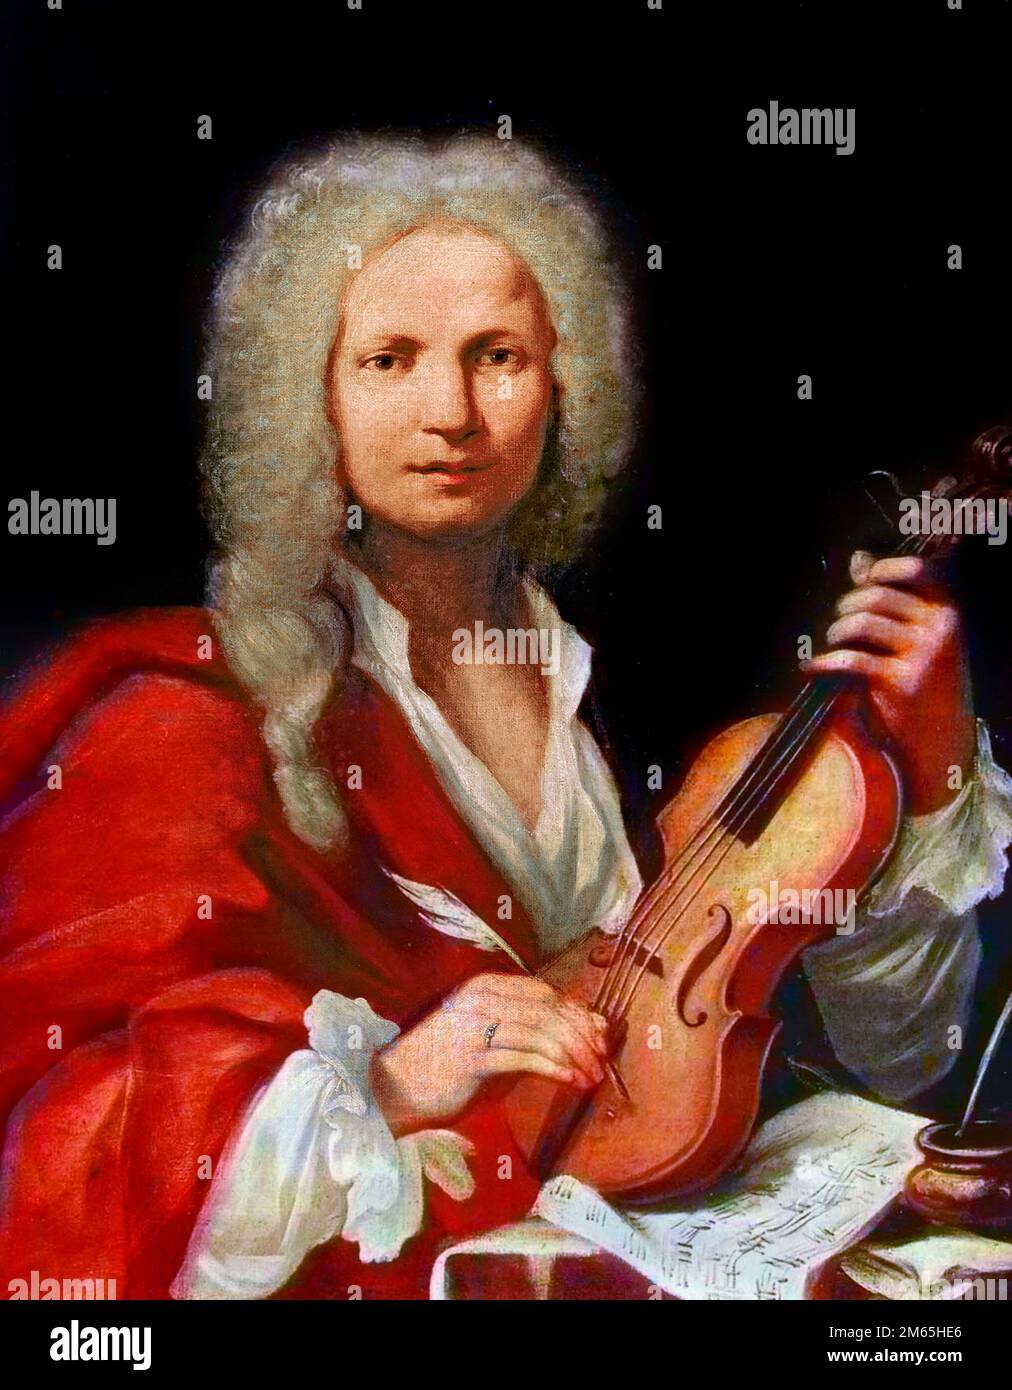 Antonio Vivaldi. Porträt des italienischen Komponisten und Violinisten Antonio Lucio Vivaldi (1678-1741), anonymes Gemälde, Öl auf Leinwand, 1723 Stockfoto